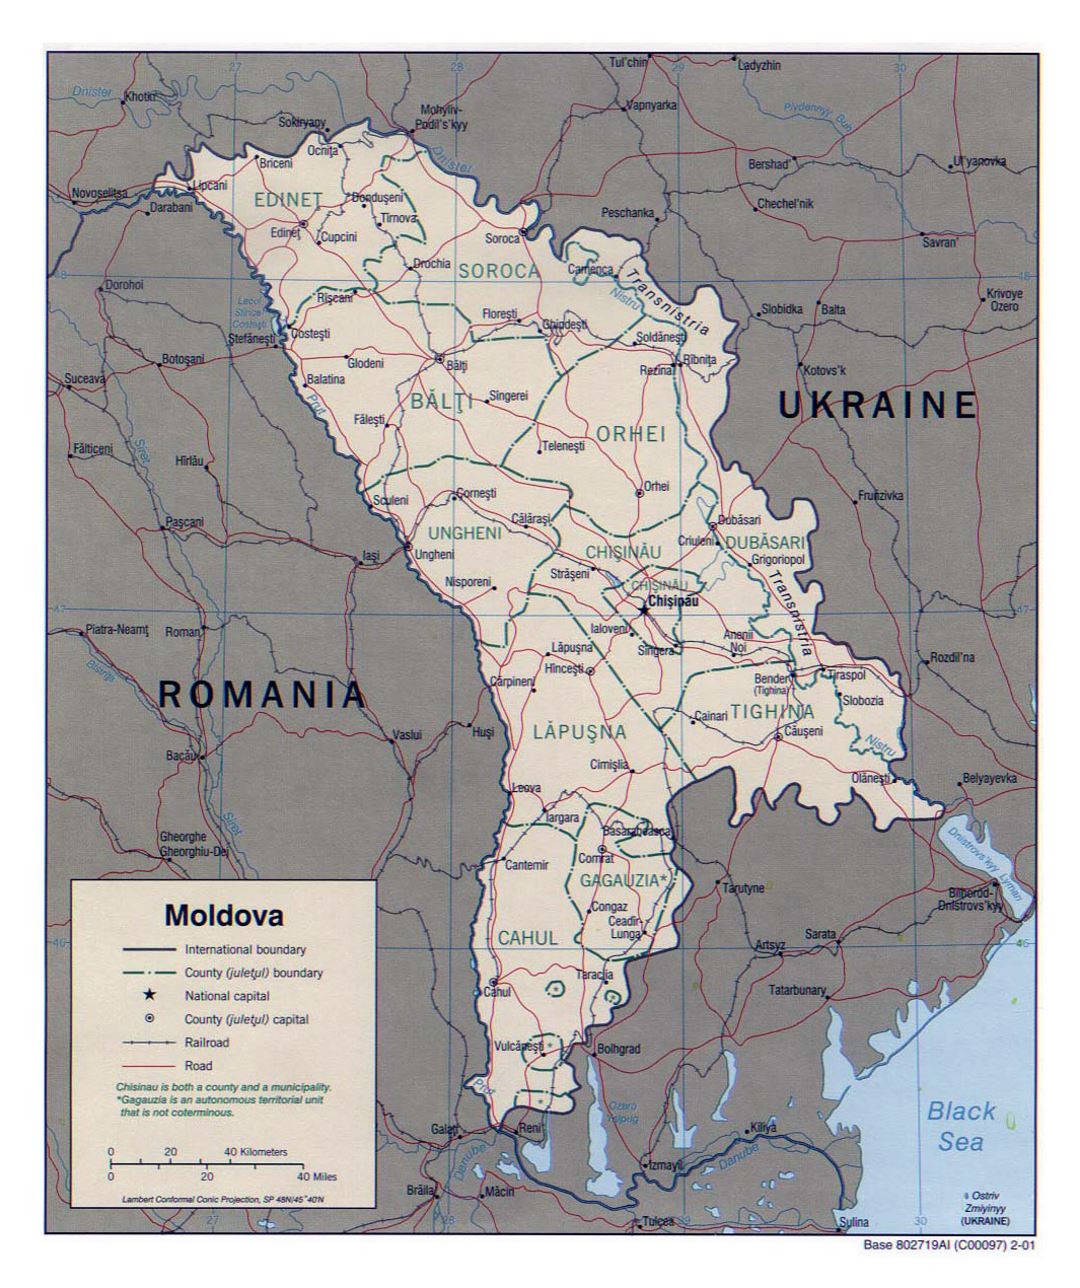 Detallado mapa político y administrativo de Moldavia con carreteras, ferrocarriles y principales ciudades - 2001